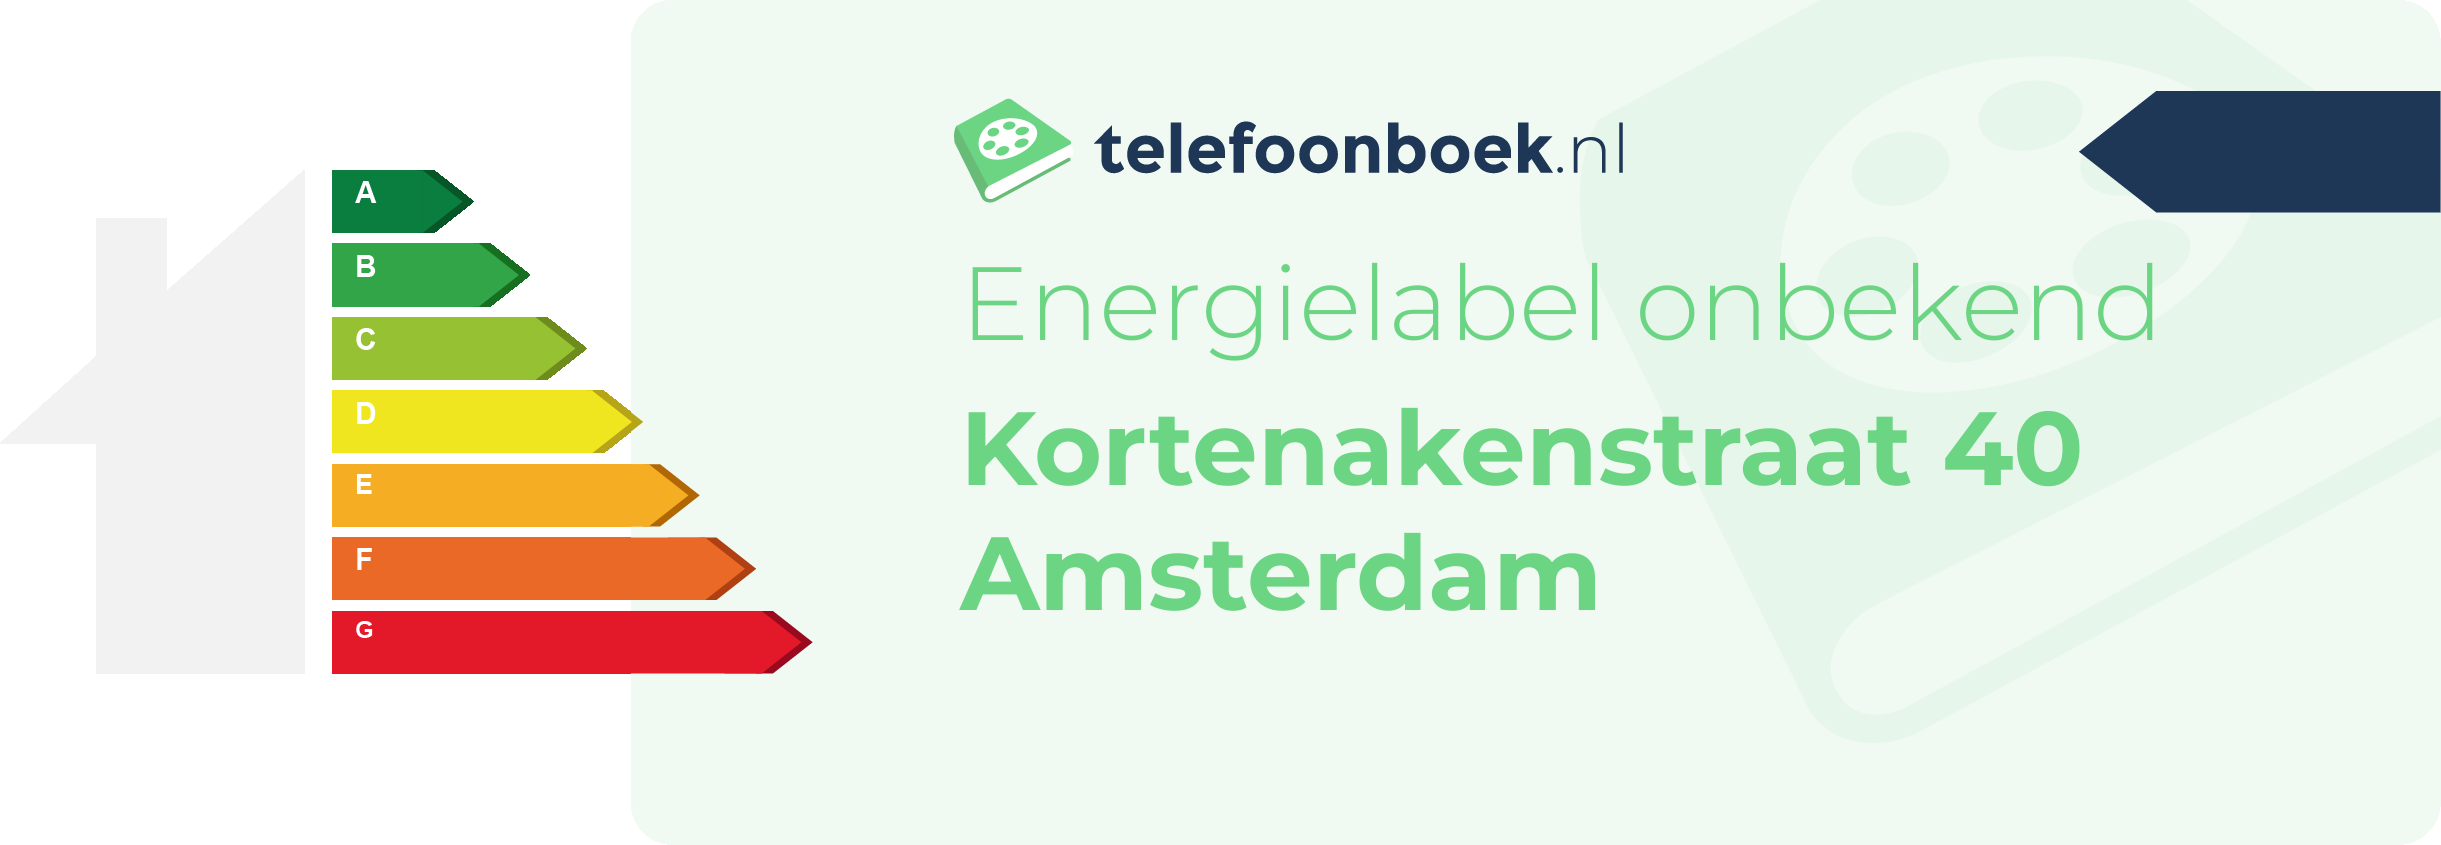 Energielabel Kortenakenstraat 40 Amsterdam